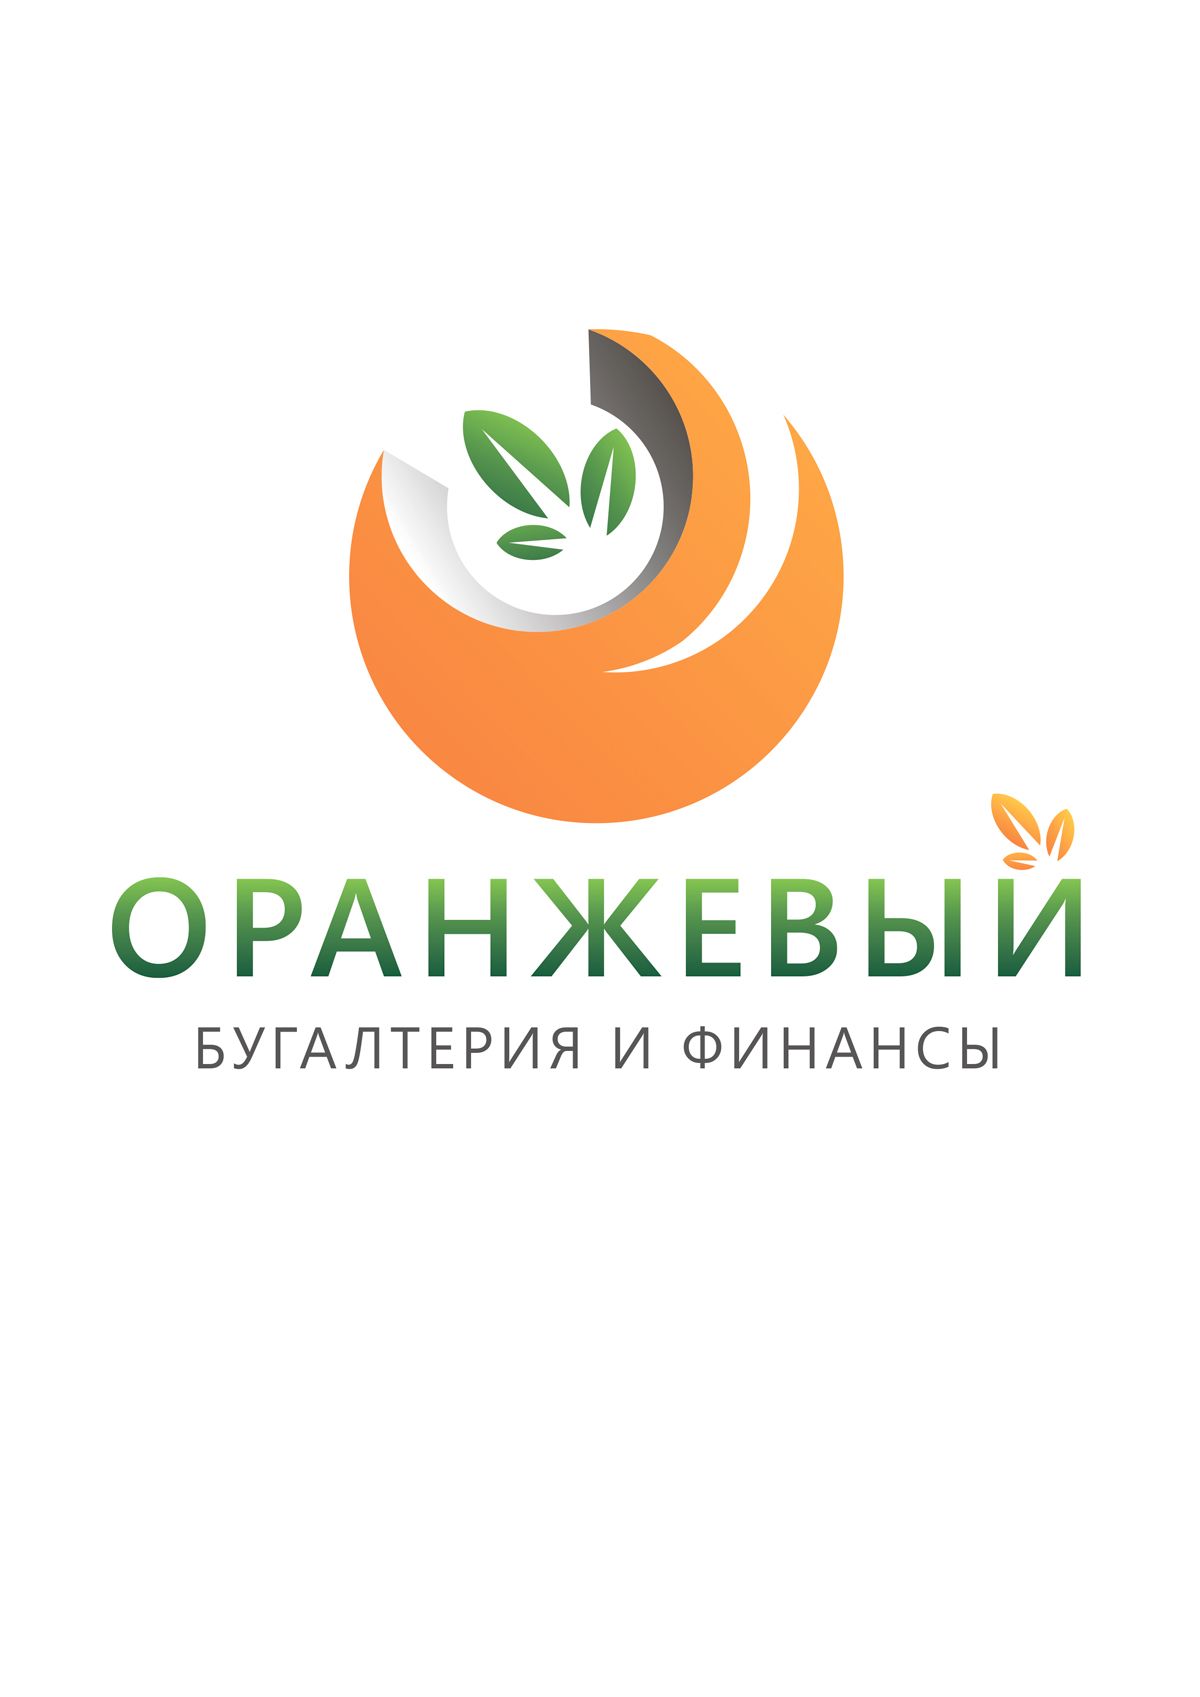 Логотип Финансовой Организации - дизайнер kasya_82